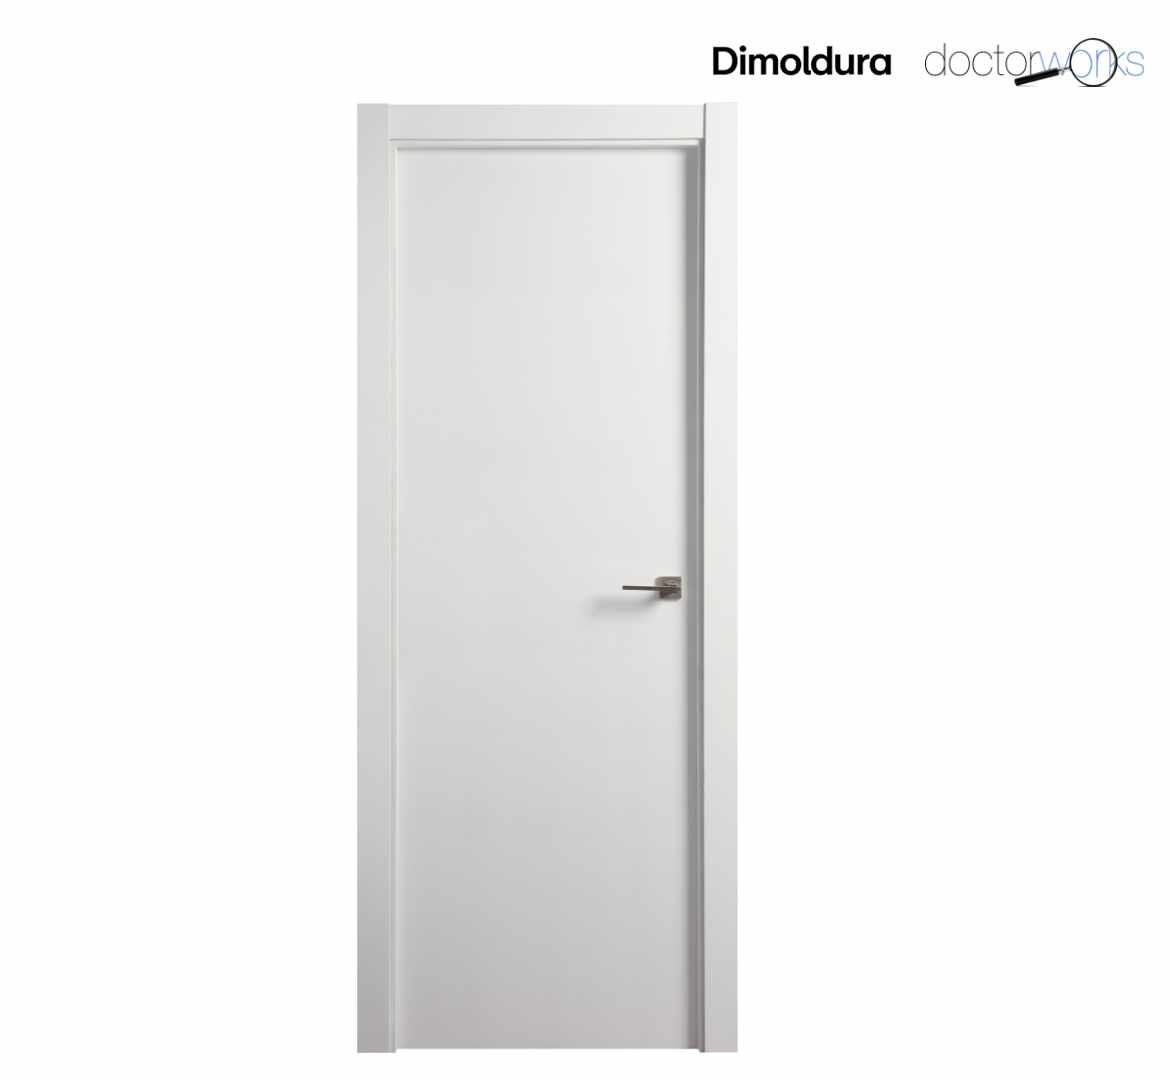 Puerta ciega lacada en blanco mod. 100 de 72,50 cm de ancho. Altura standard 2030 mm